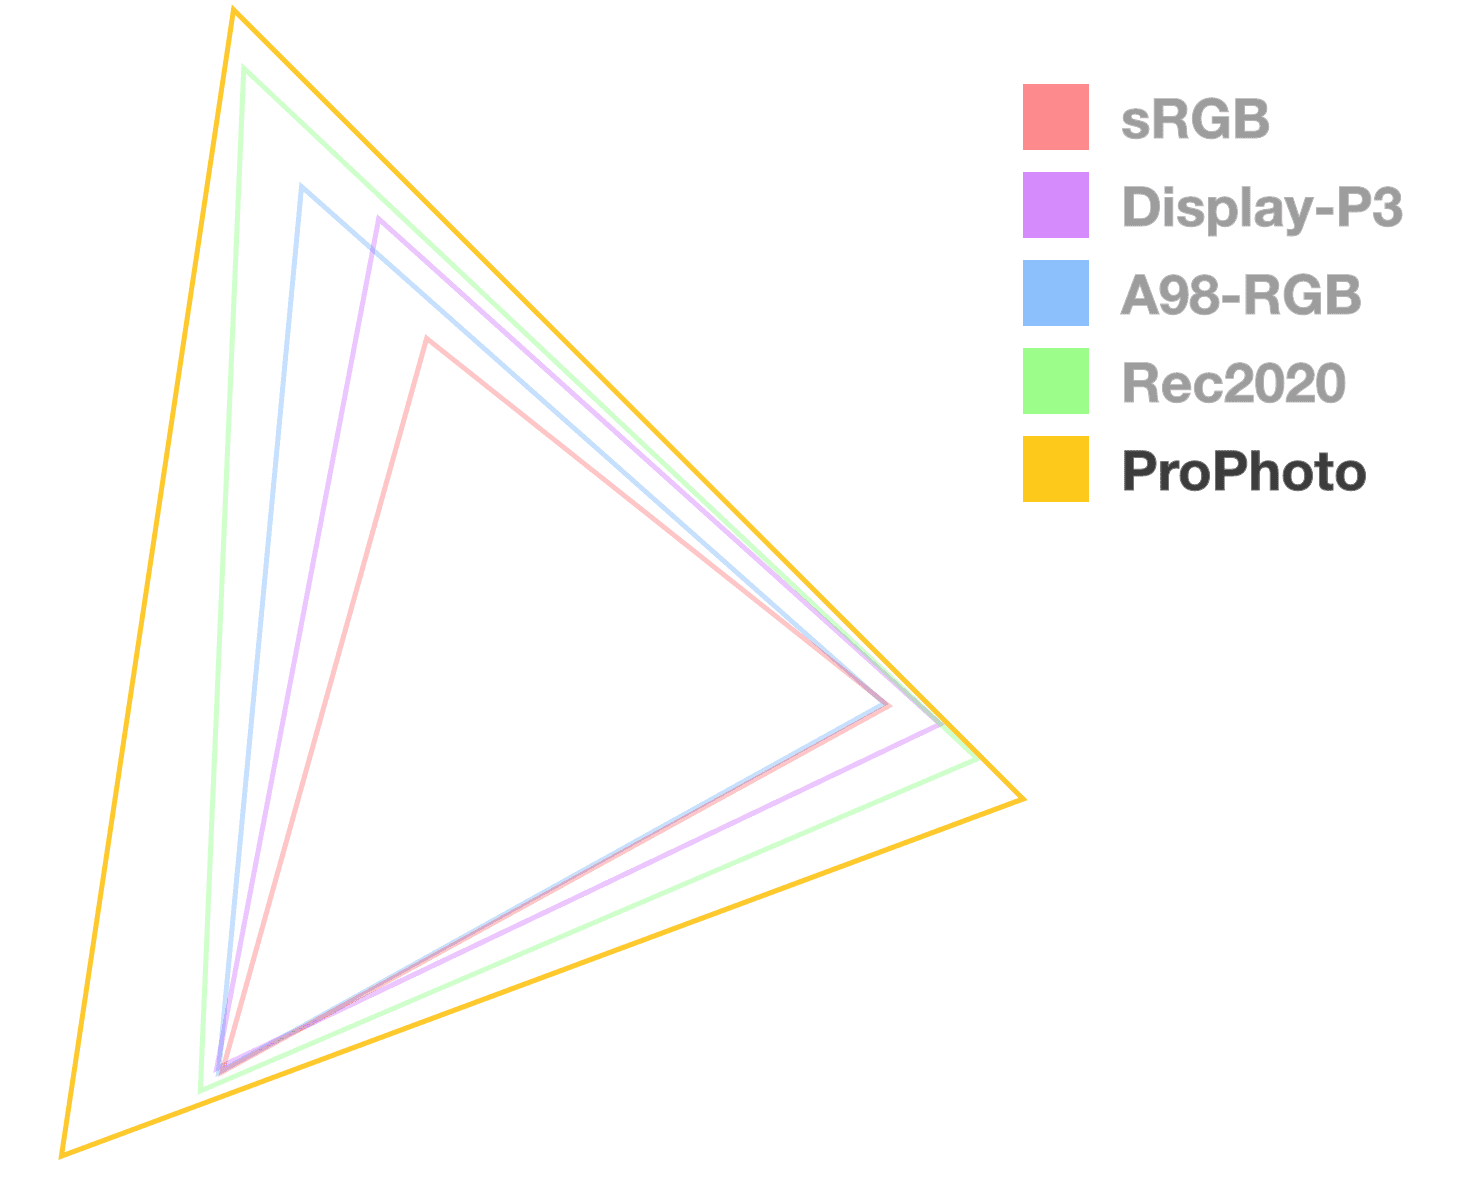 ProPhoto est le seul triangle complètement opaque, qui permet de visualiser la taille de la gamme. Il semble être le plus grand.